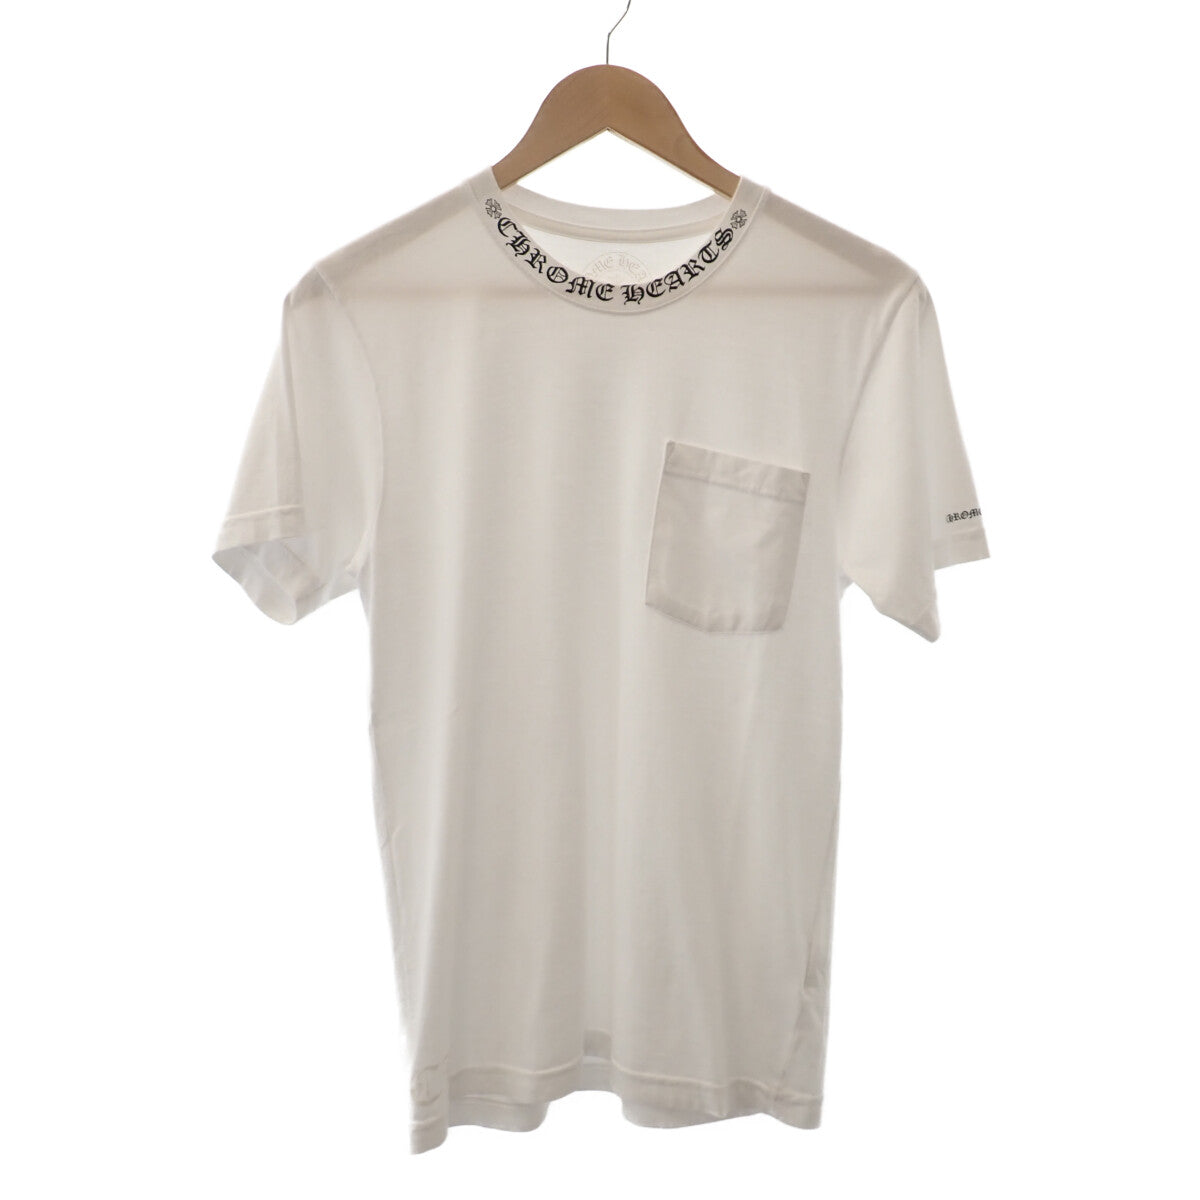 ネックロゴTシャツ 半袖 トップス 2212-304-0010 コットン ホワイト ...